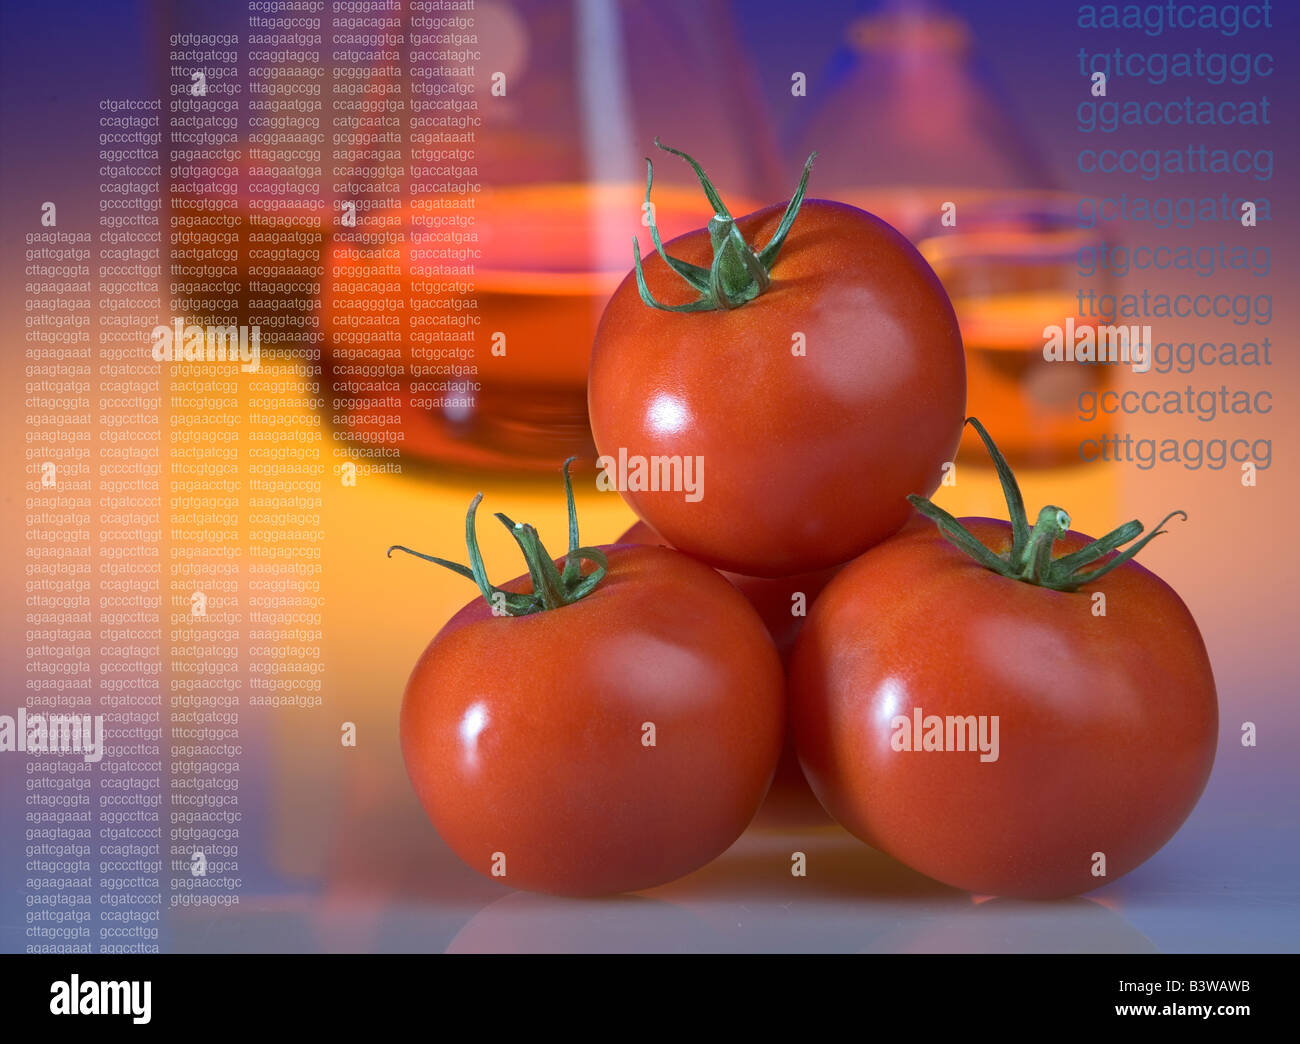 Capture d'organismes génétiquement modifiés Concept montrant les tomates et les codes d'une séquence d'ADN de la béchère Banque D'Images